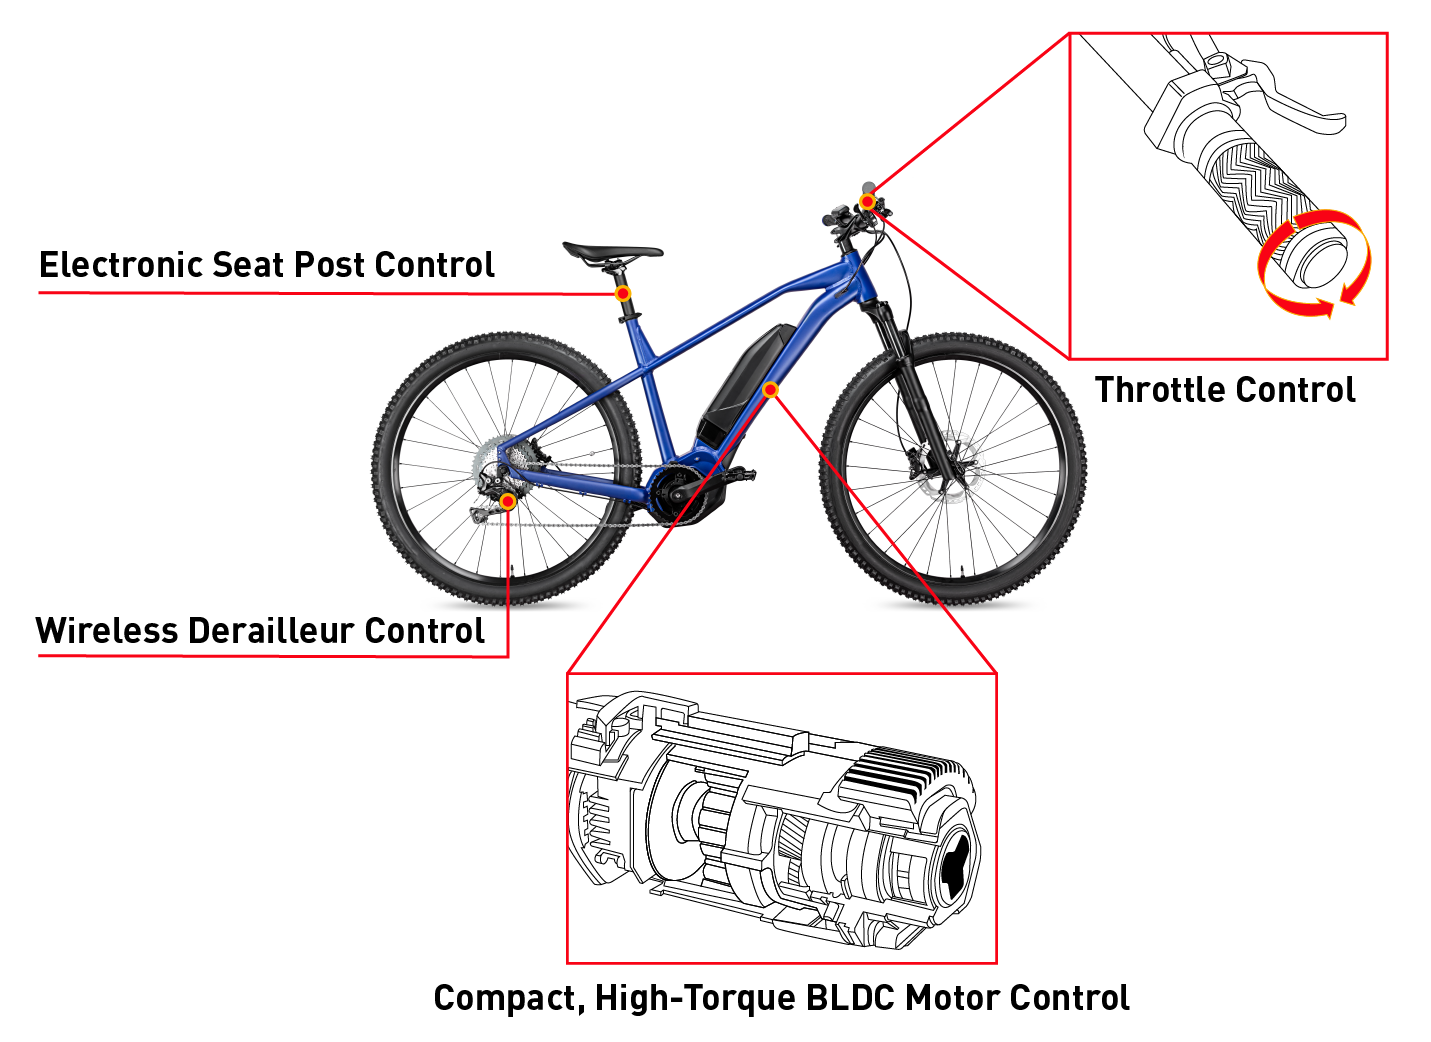 角度傳感器用例：電動自行車